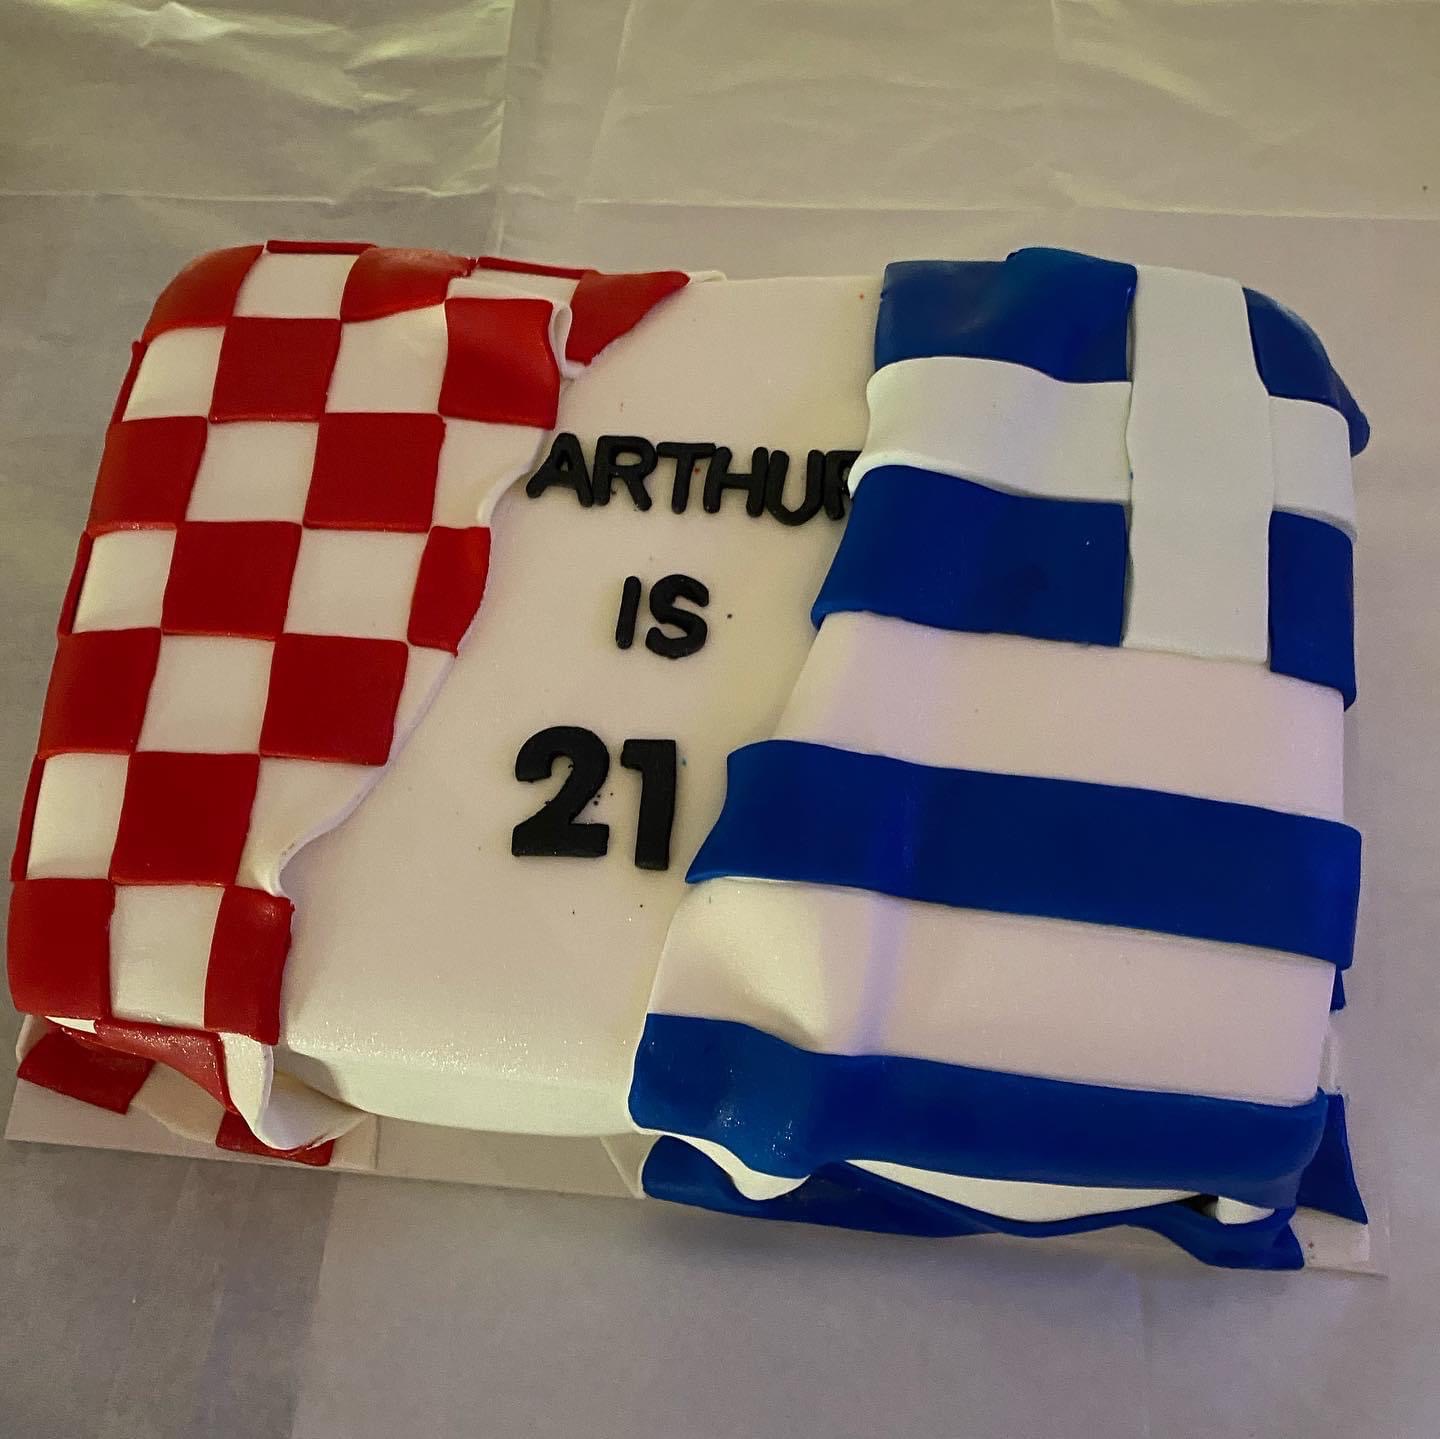 arthurs_21st_cake.JPG